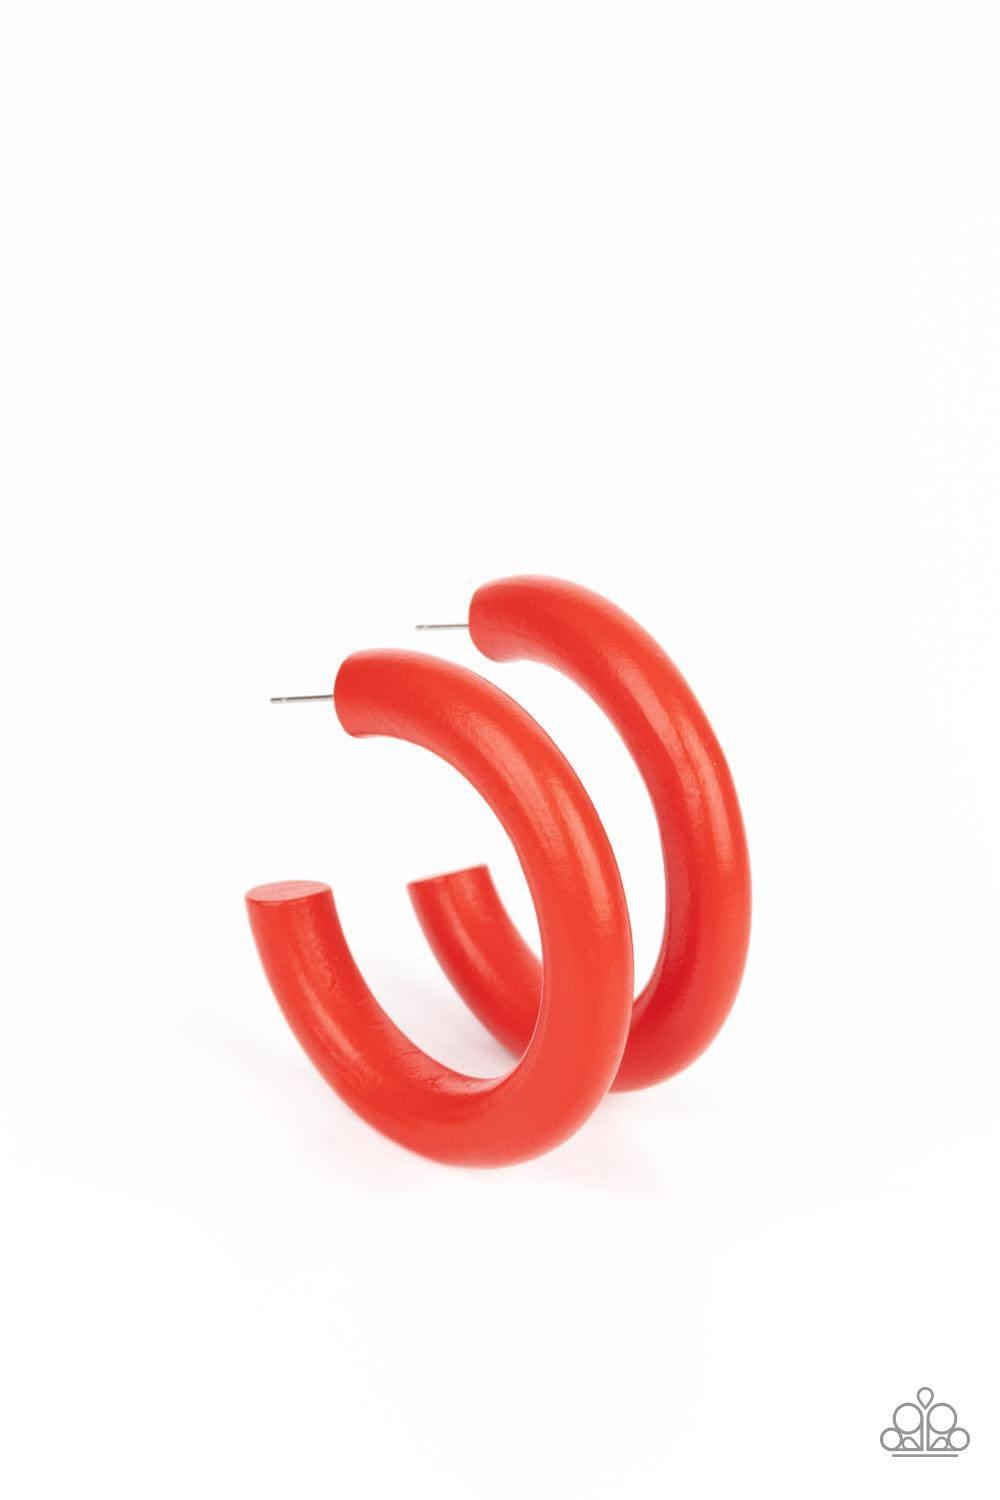 Paparazzi Accessories - Woodsy Wonder - Red Hoop Earrings - Bling by JessieK